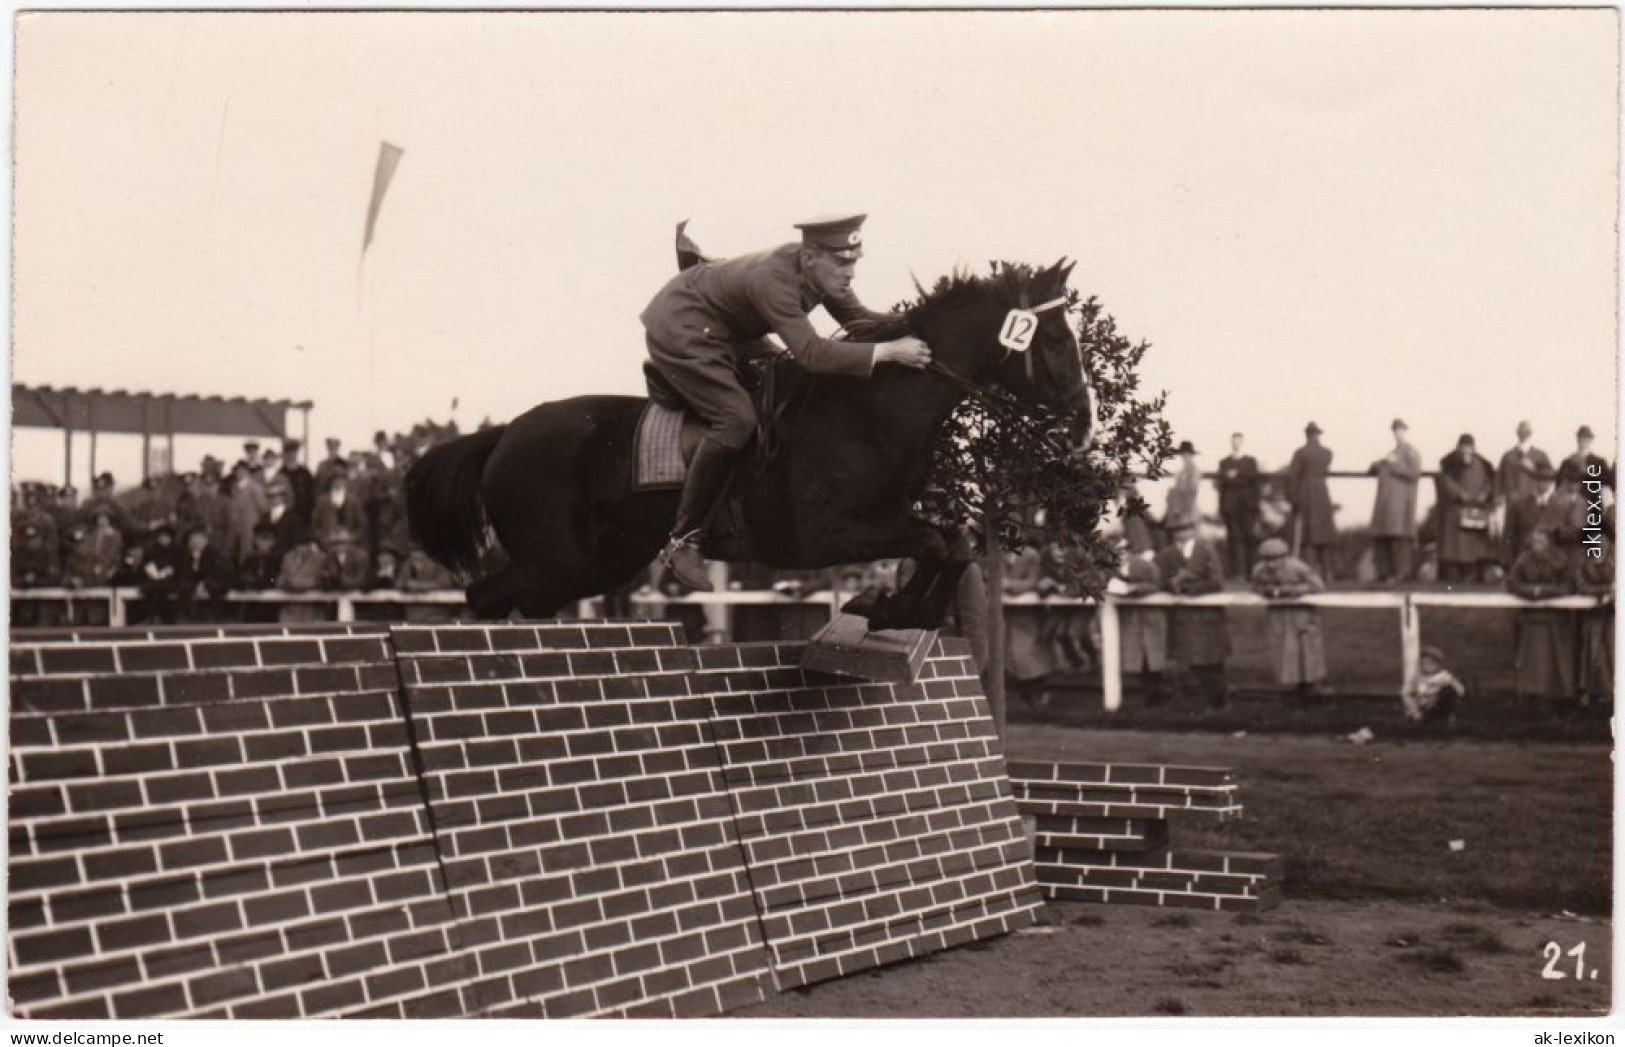 Ansichtskarte  Springreiter - Sprung über Mauer, Turnier 1924 - Reitsport